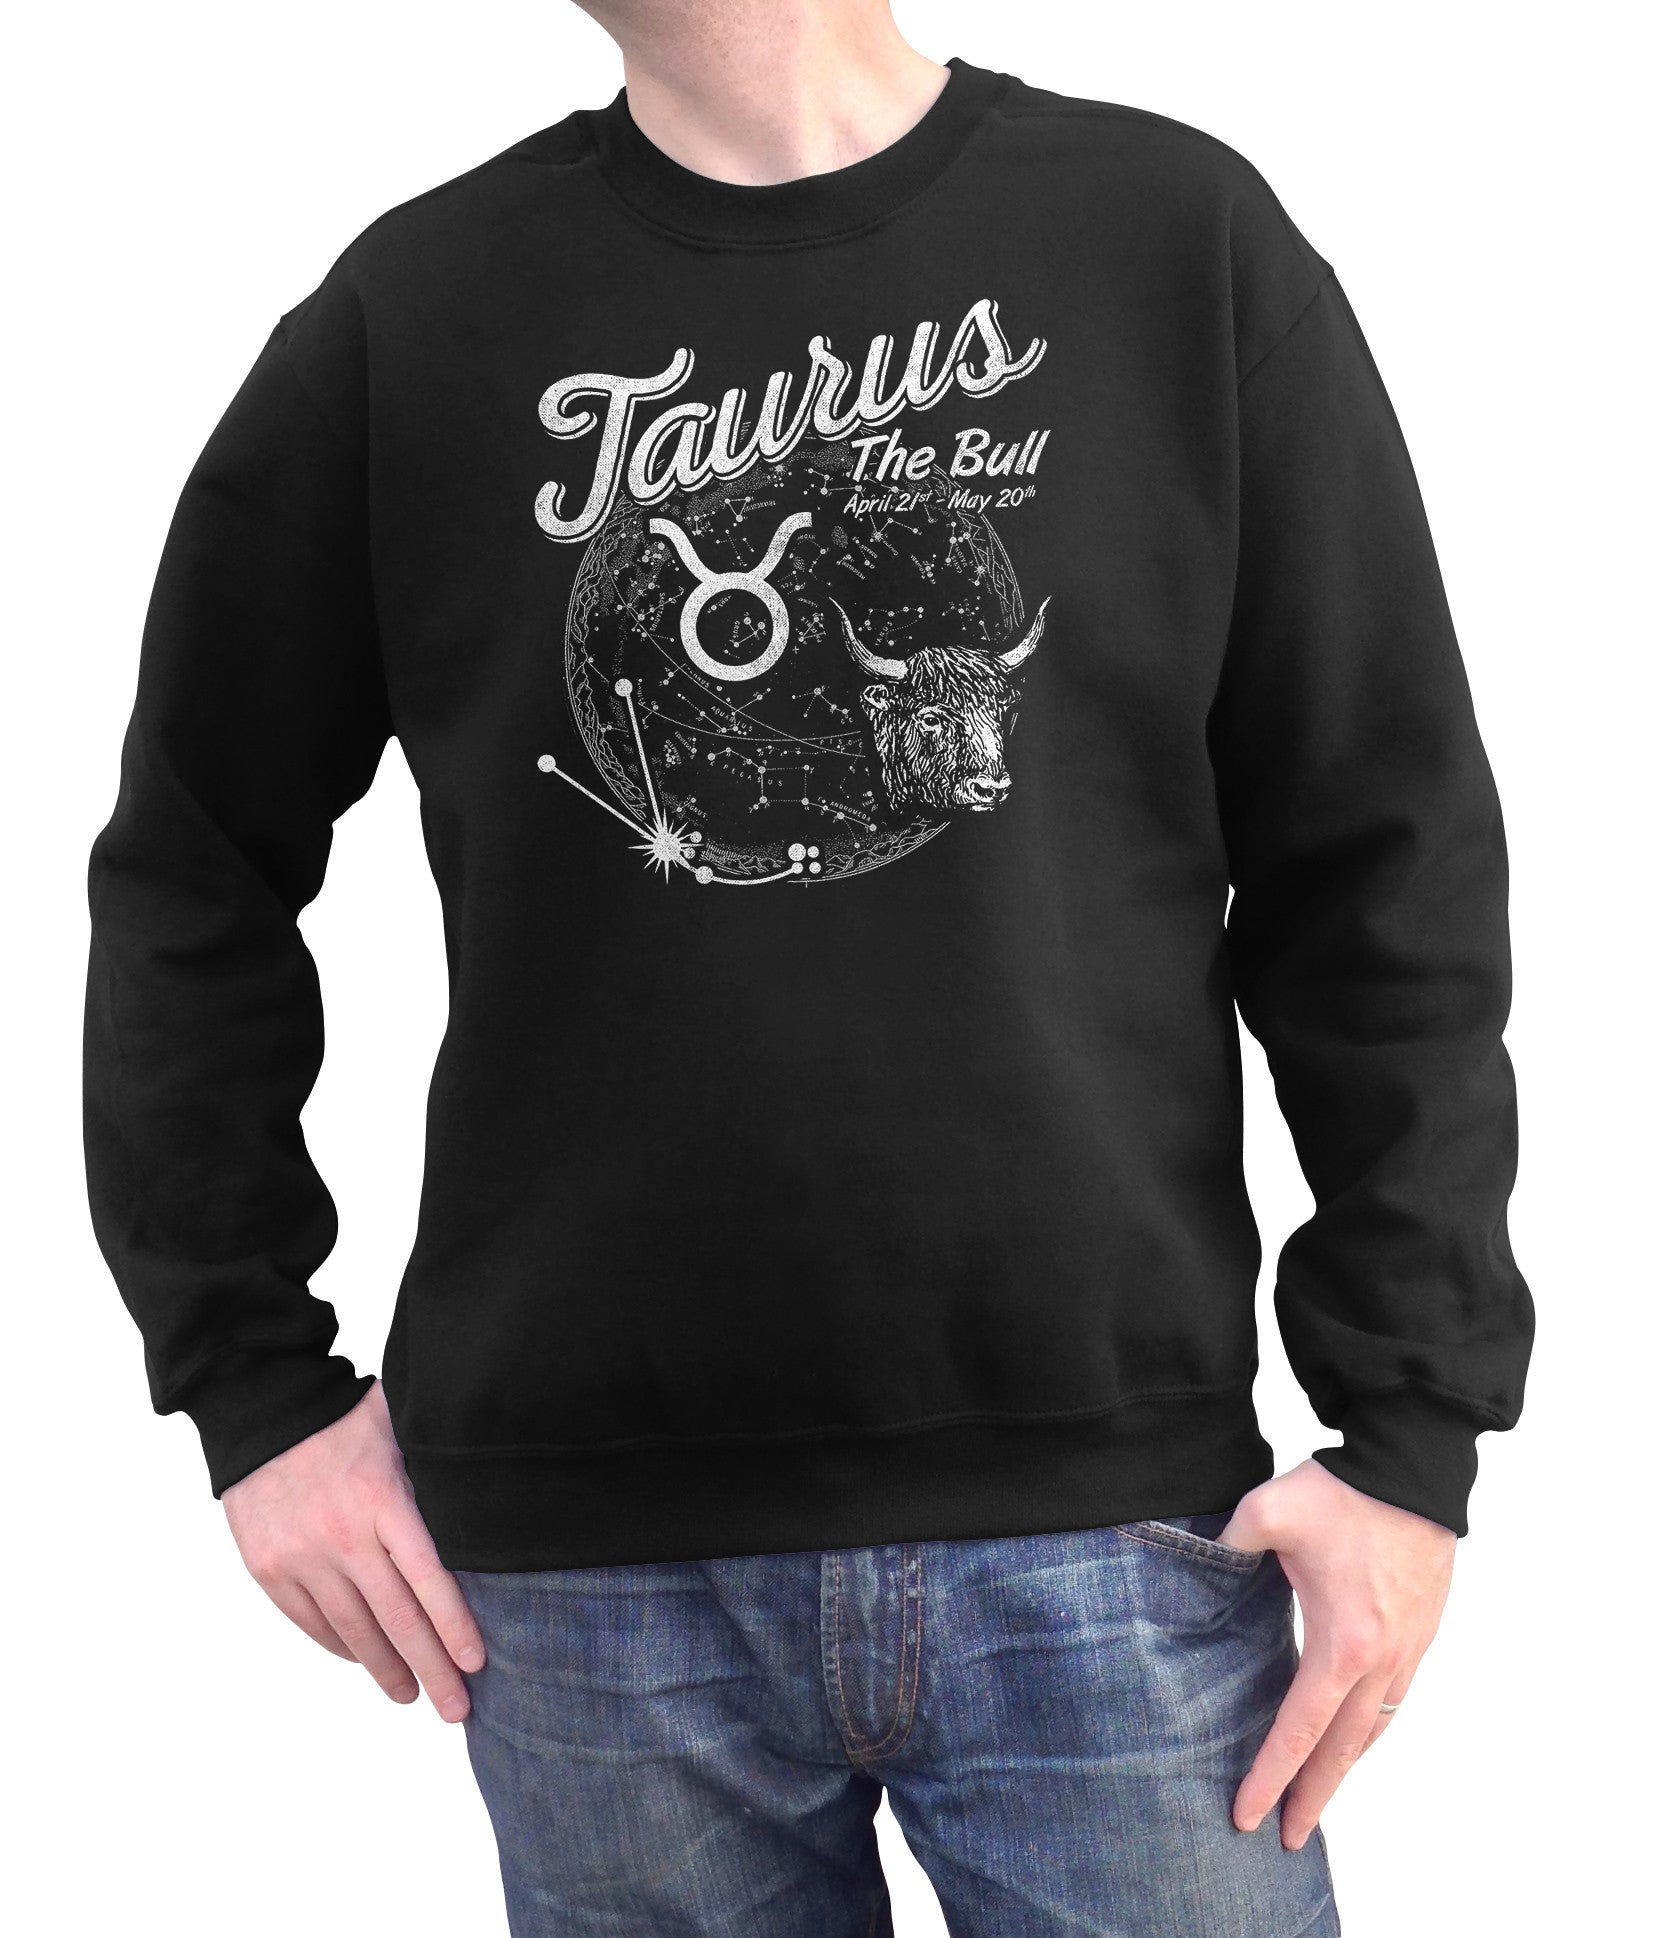 Unisex Vintage Taurus Sweatshirt